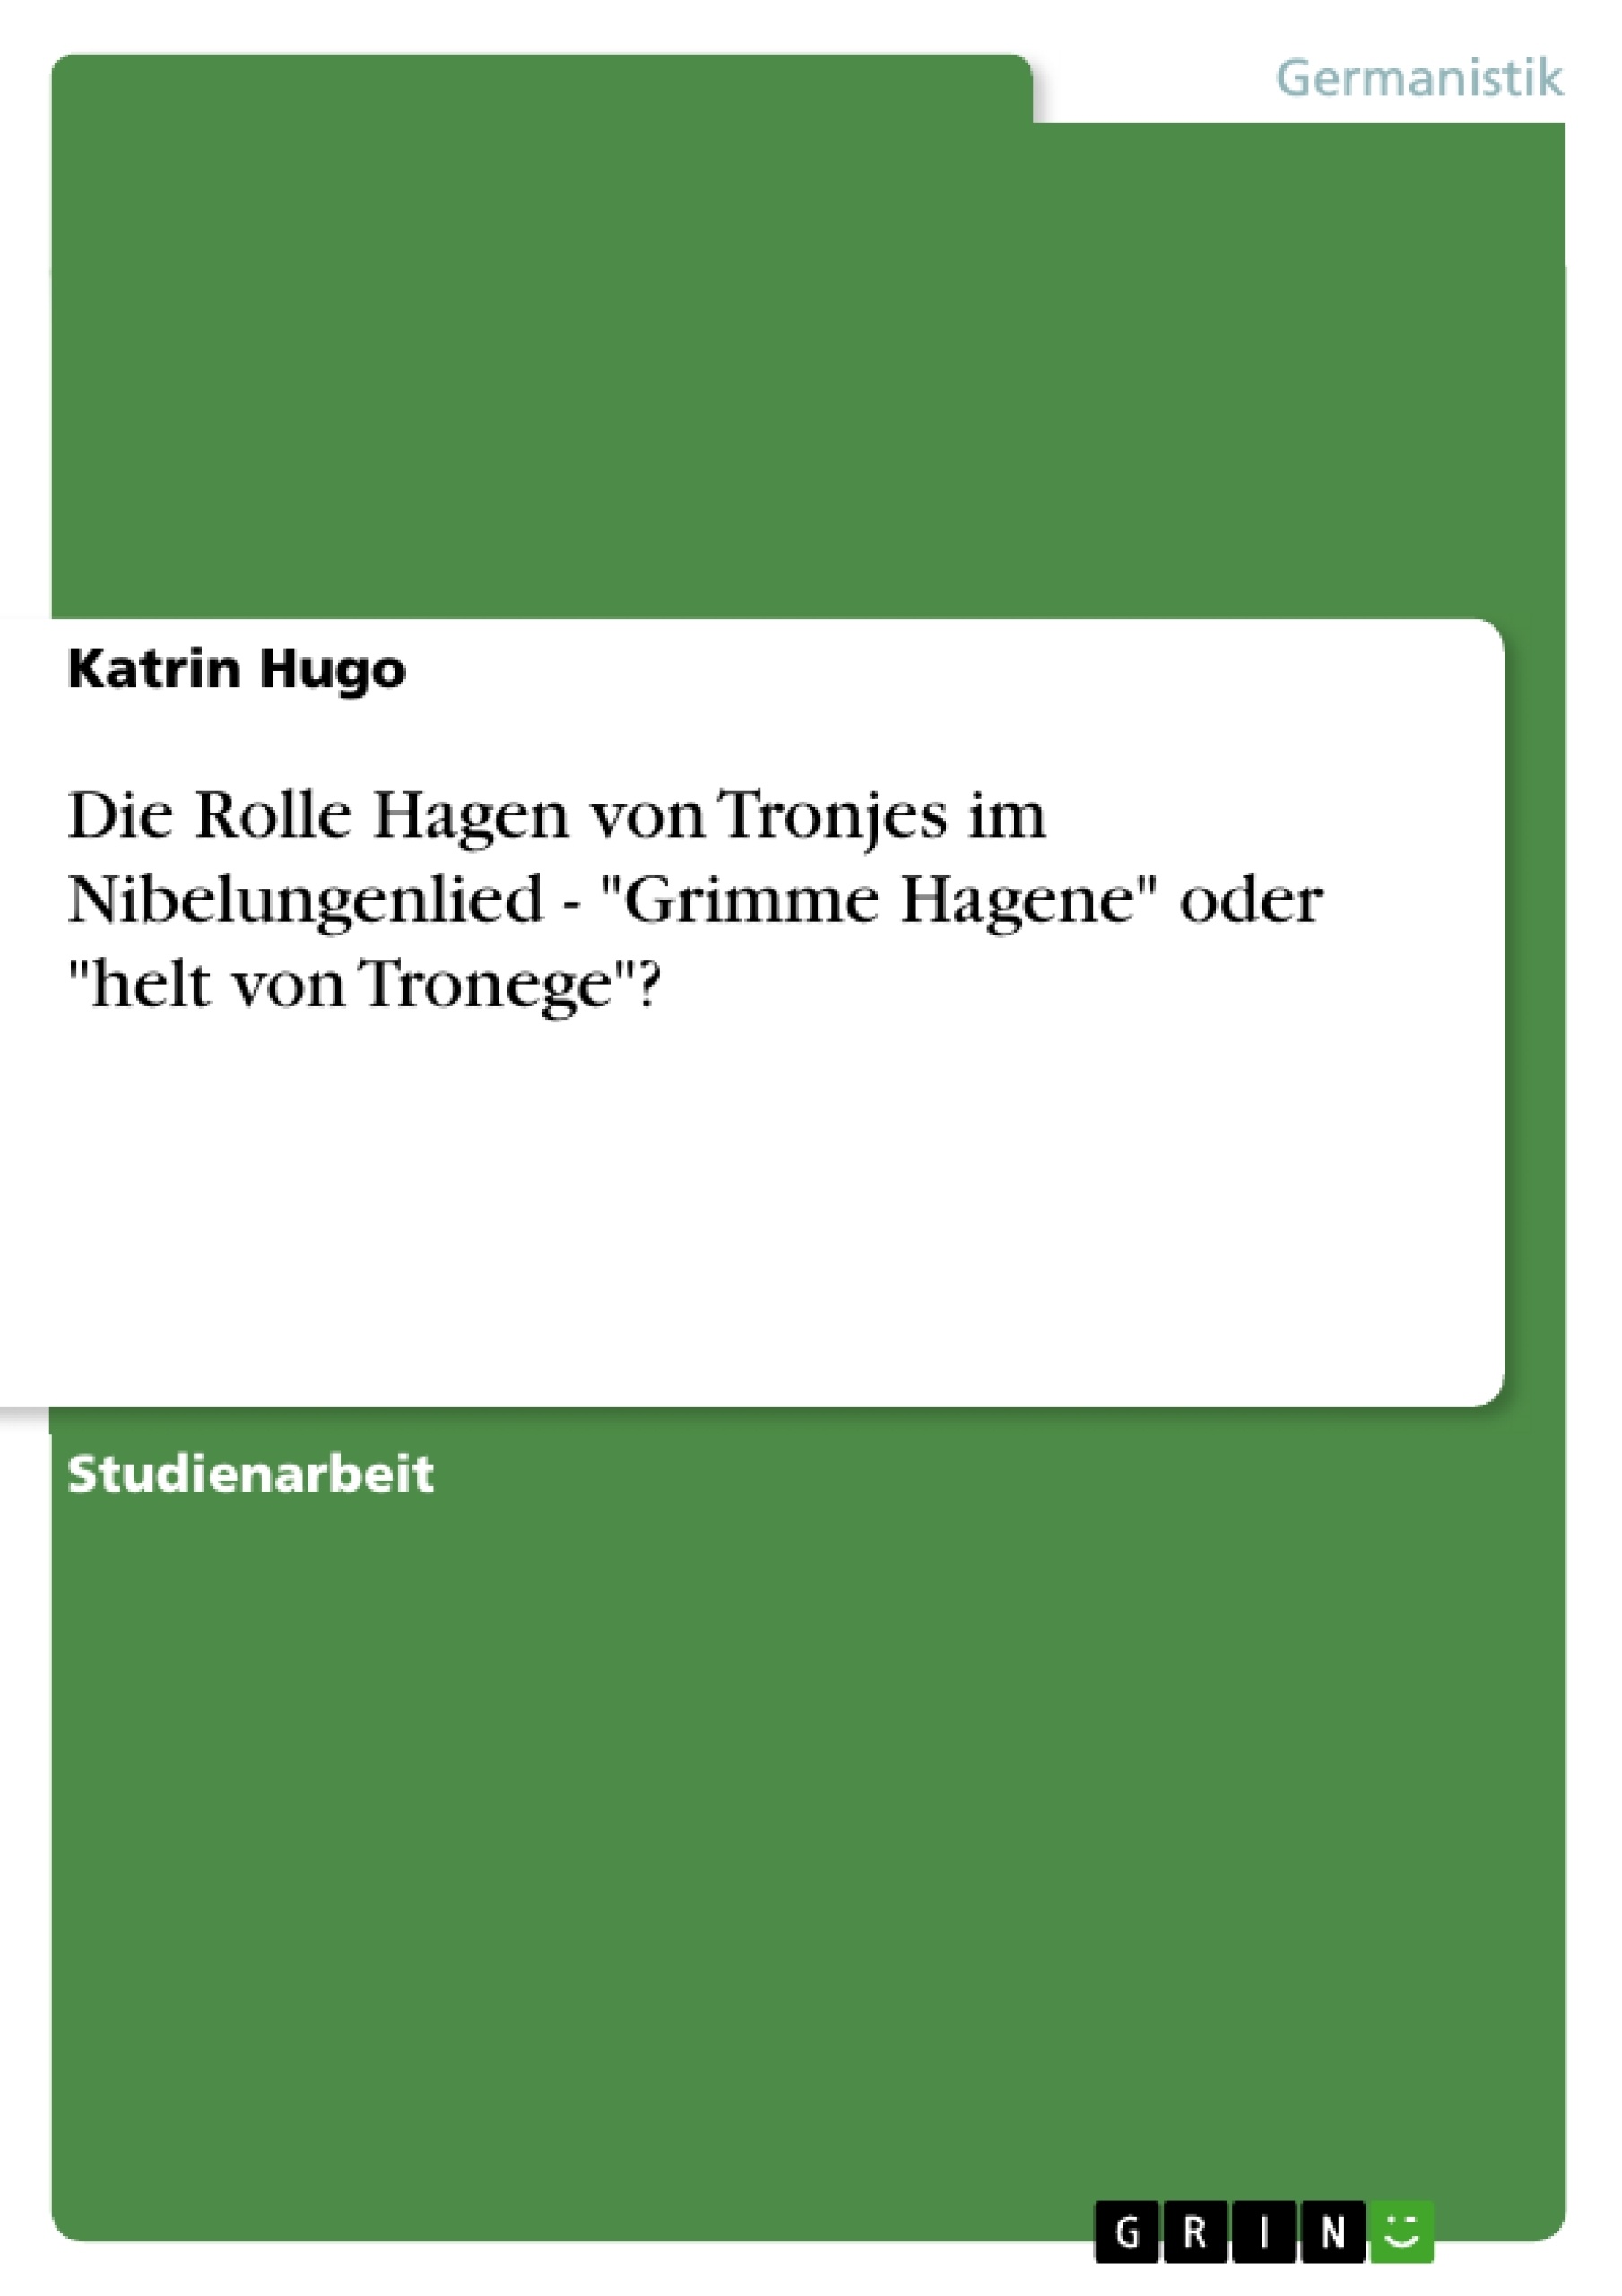 Title: Die Rolle Hagen von Tronjes im Nibelungenlied  - "Grimme Hagene" oder "helt von Tronege"?